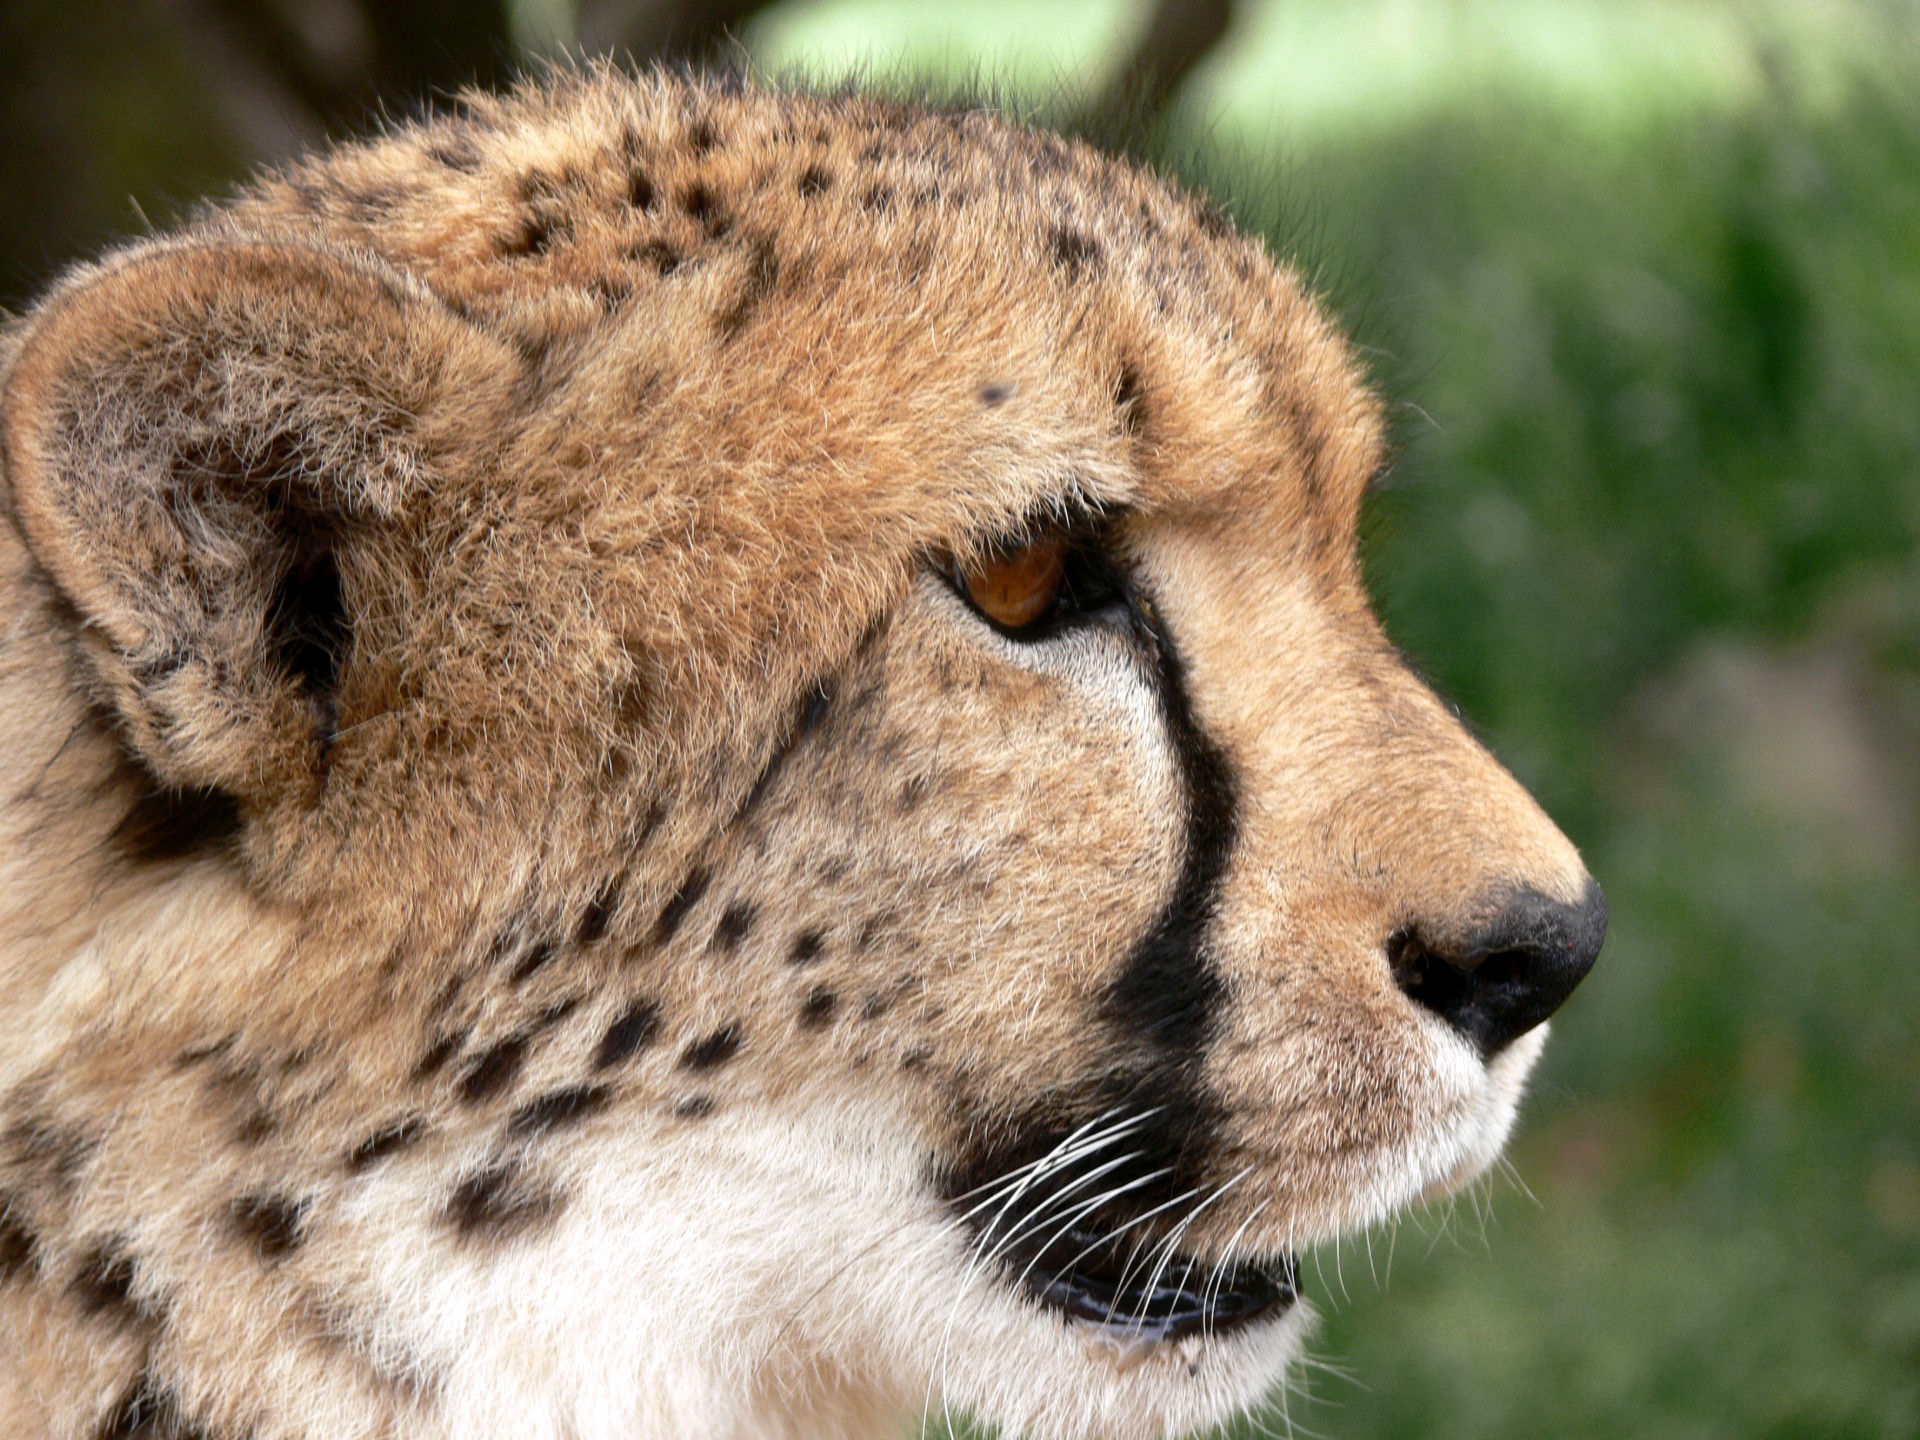 Closeup view of a cheetah's head